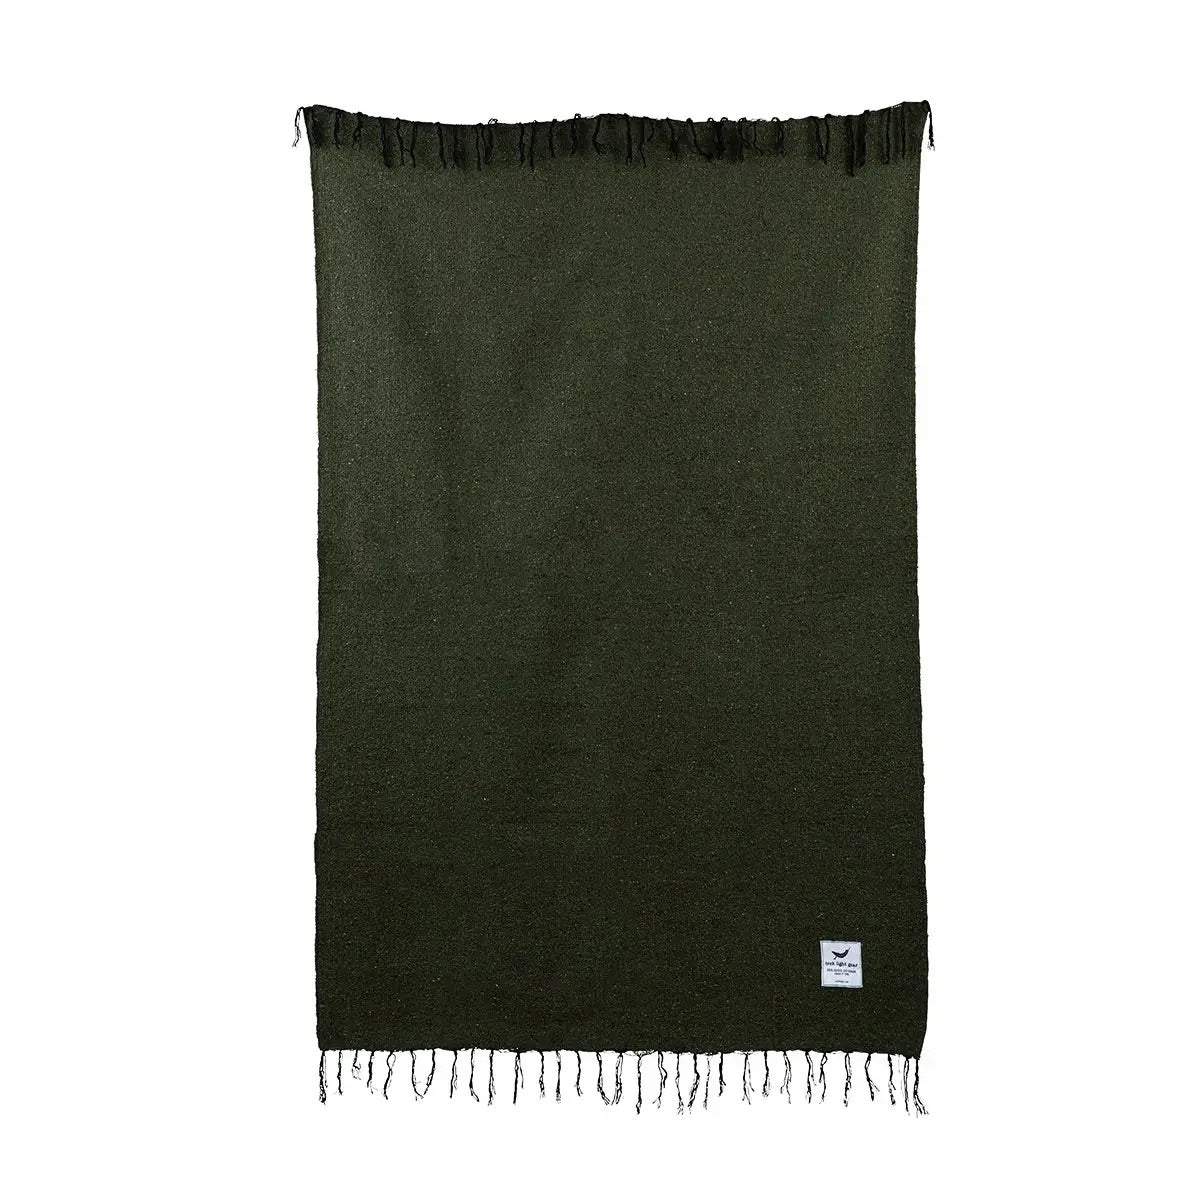 Humbolt Blanket-Olive Green